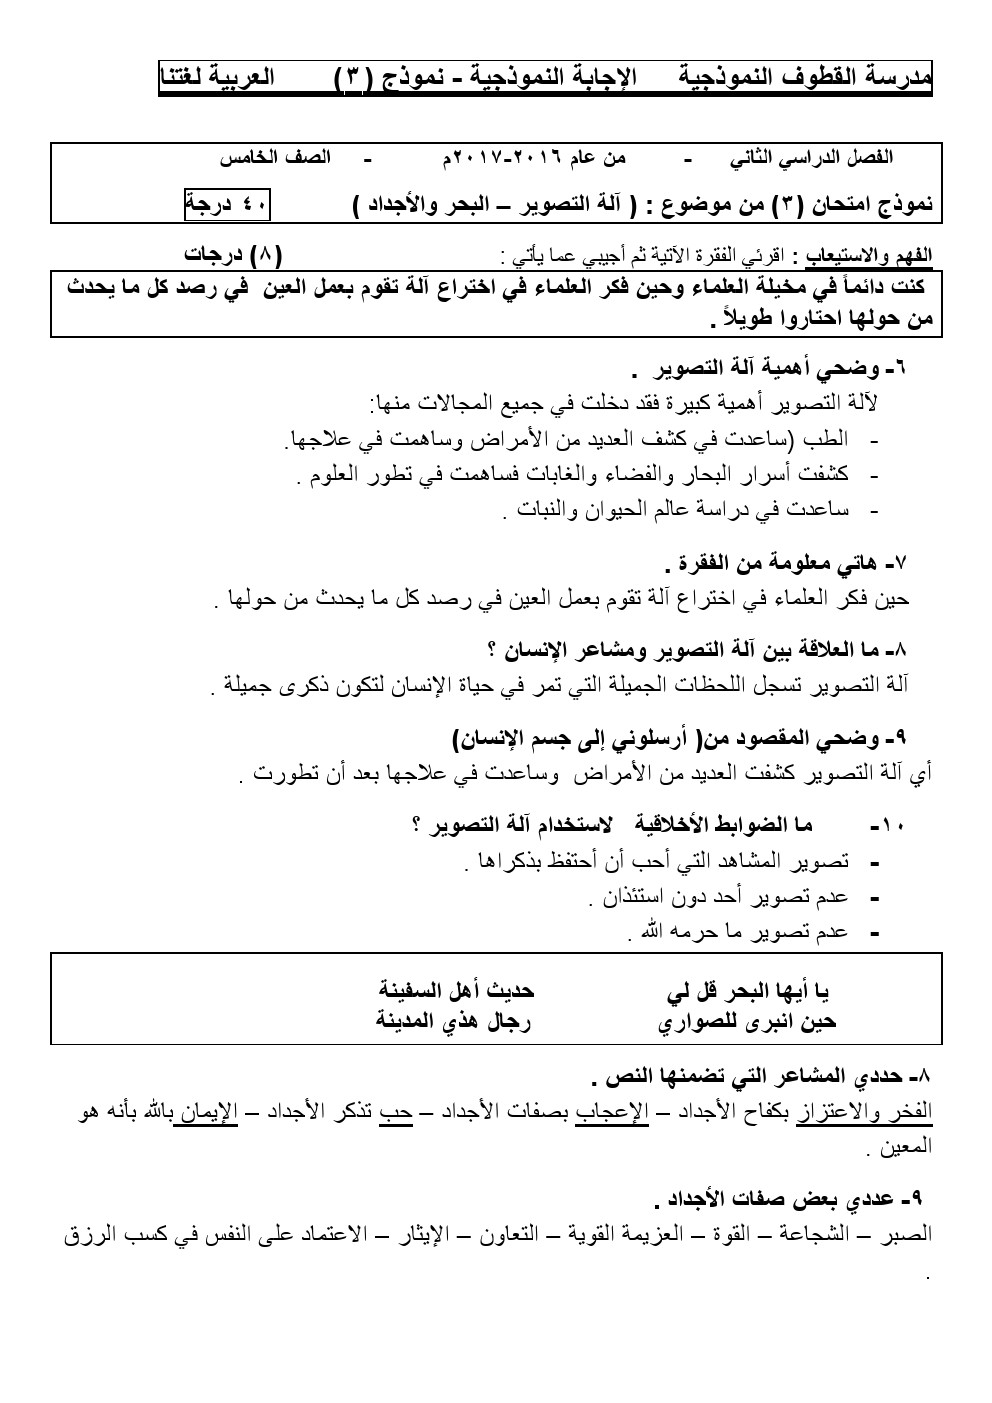 حلول كتاب اللغة العربية للصف الخامس الفصل الثاني المكتبة